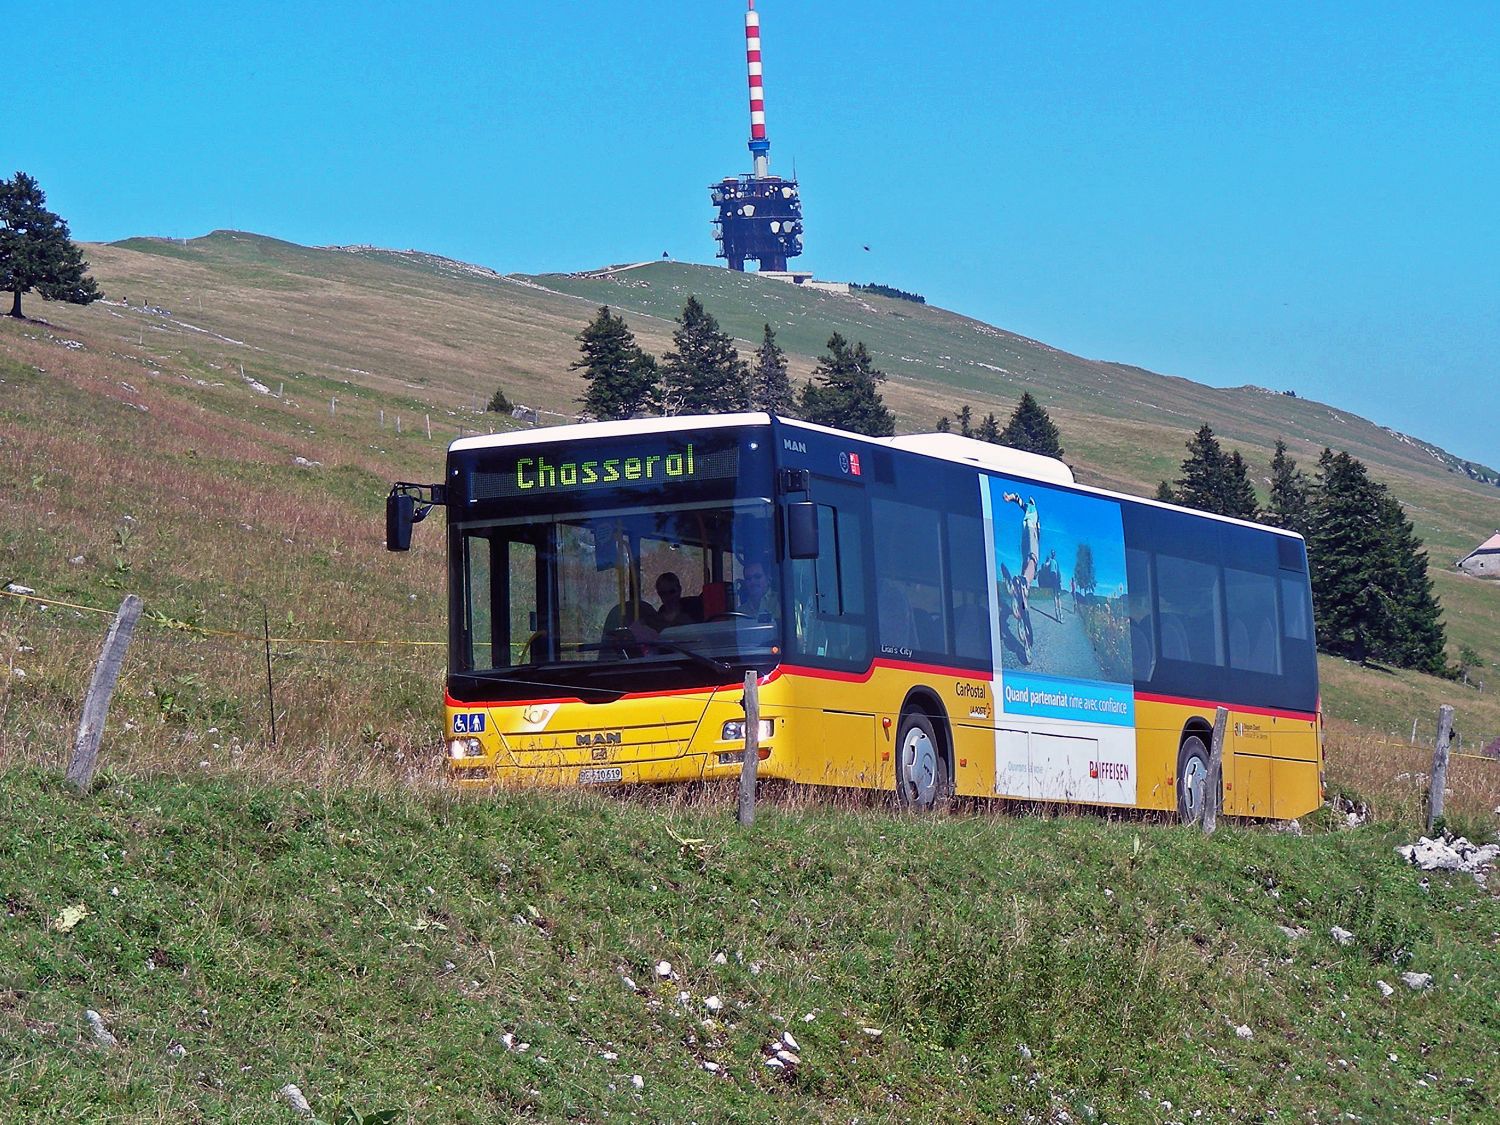 La ligne reliant Nods à Chasseral a transporté plus de visiteurs en 2019 qu'en 2018.